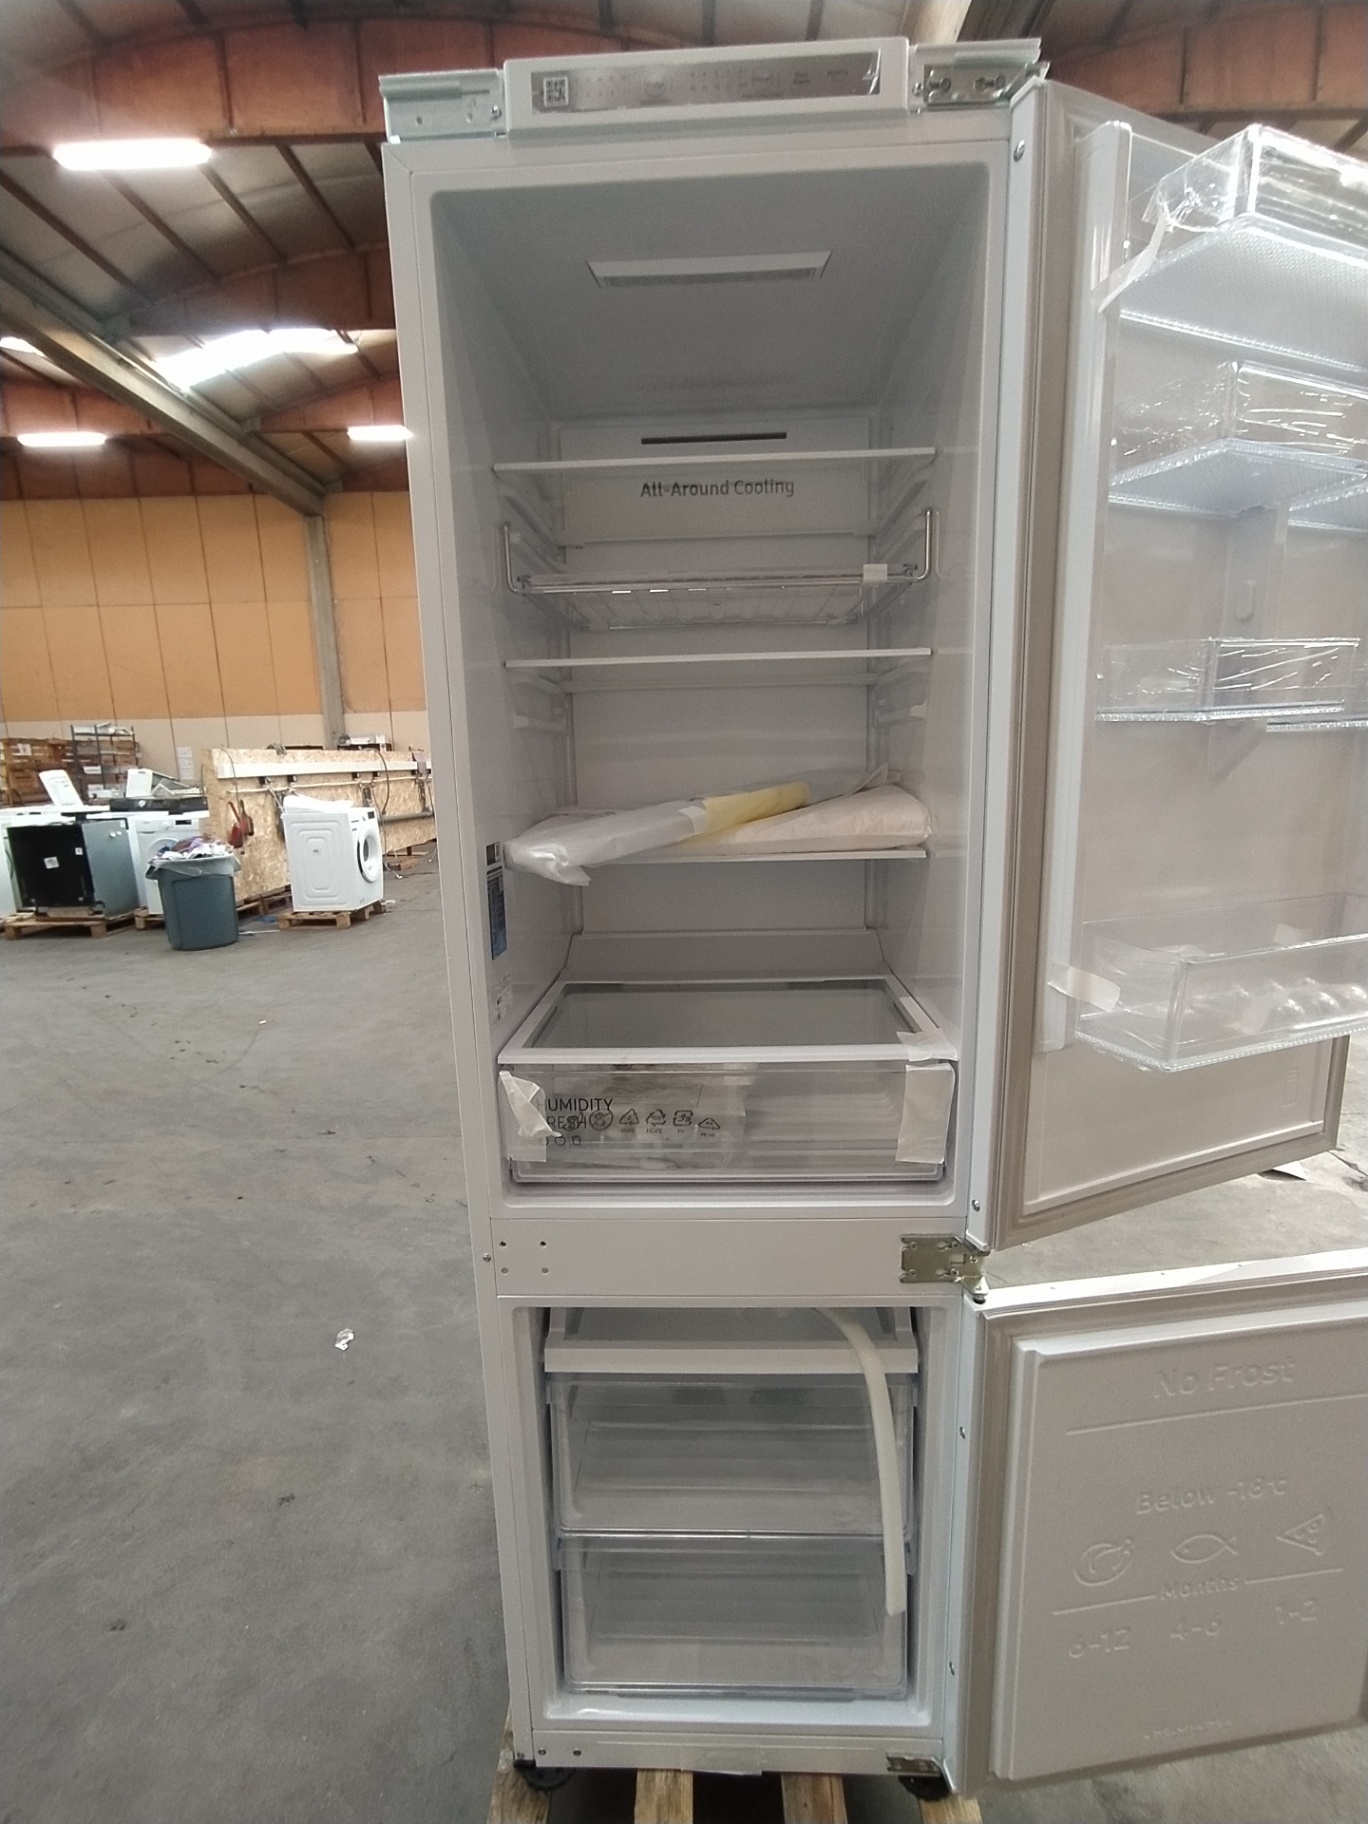 Combiné réfrigérateur-congélateur encastrable, BRB26602EWW